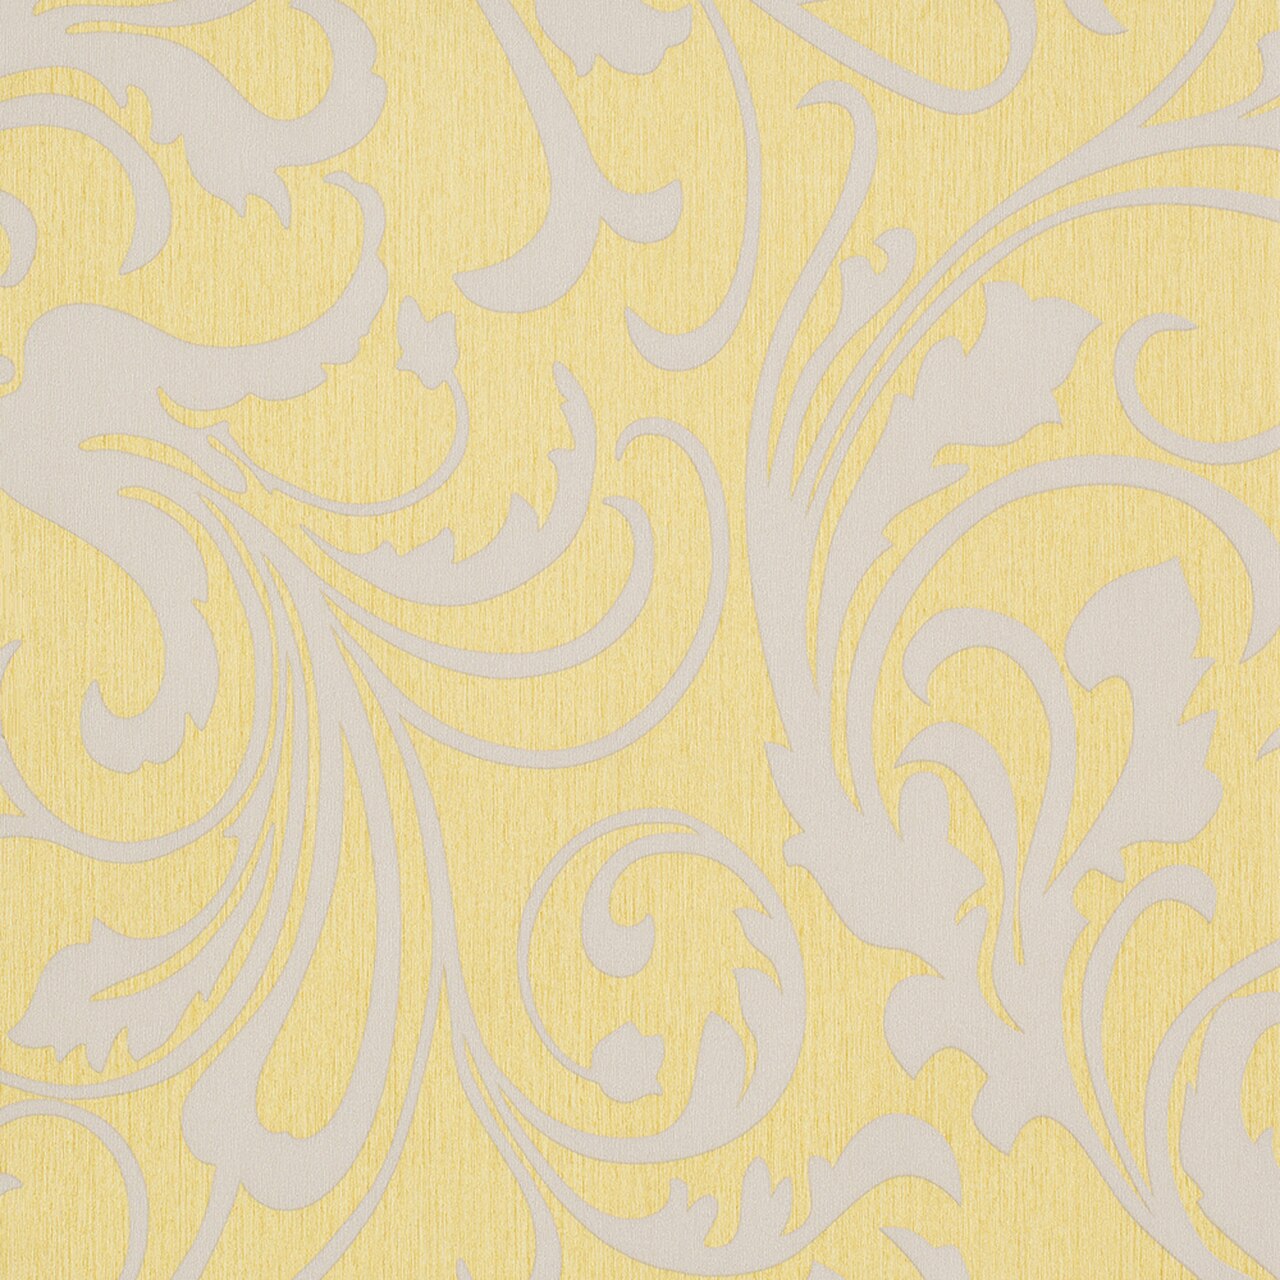 Mustard Yellow And Grey - HD Wallpaper 